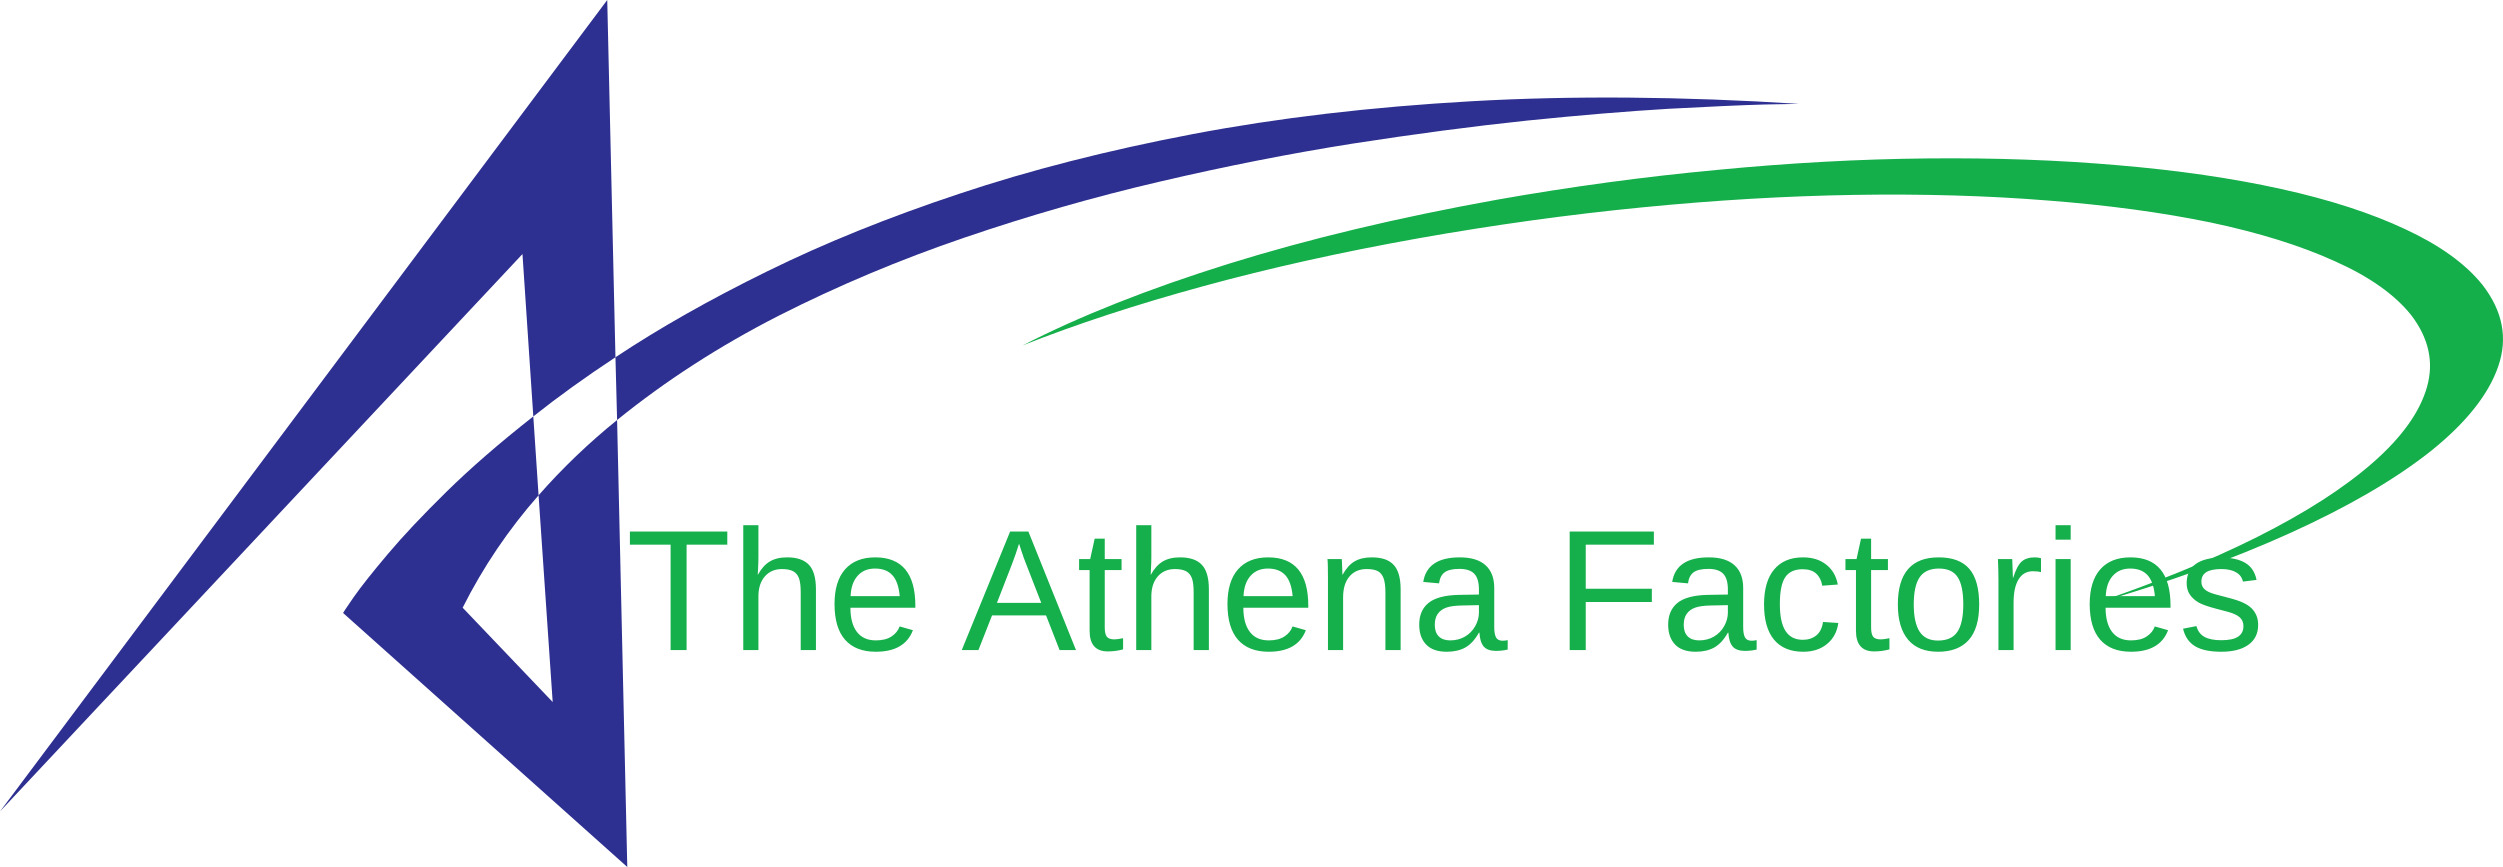 THE ATHENA FACTORIES